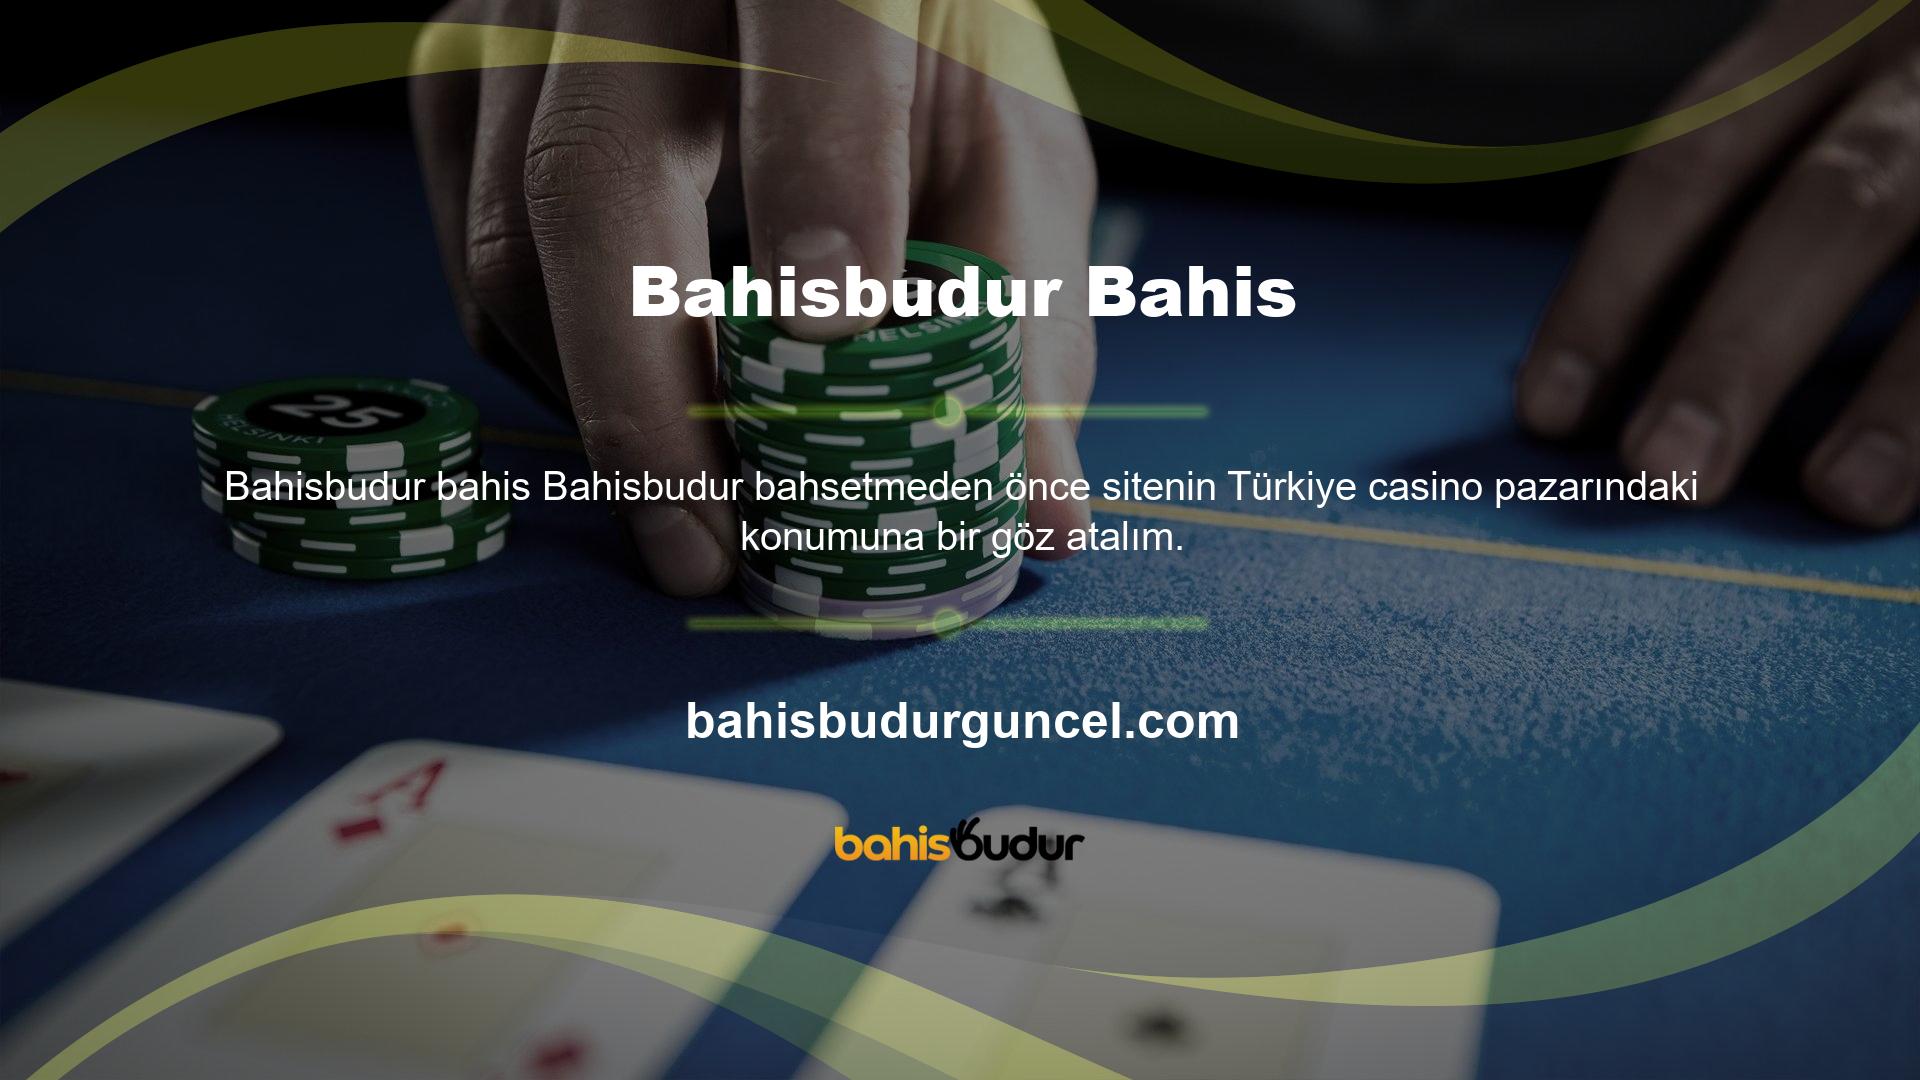 Bildiğiniz gibi Bahisbudur sitesi uluslararası bahis sitelerinden biridir